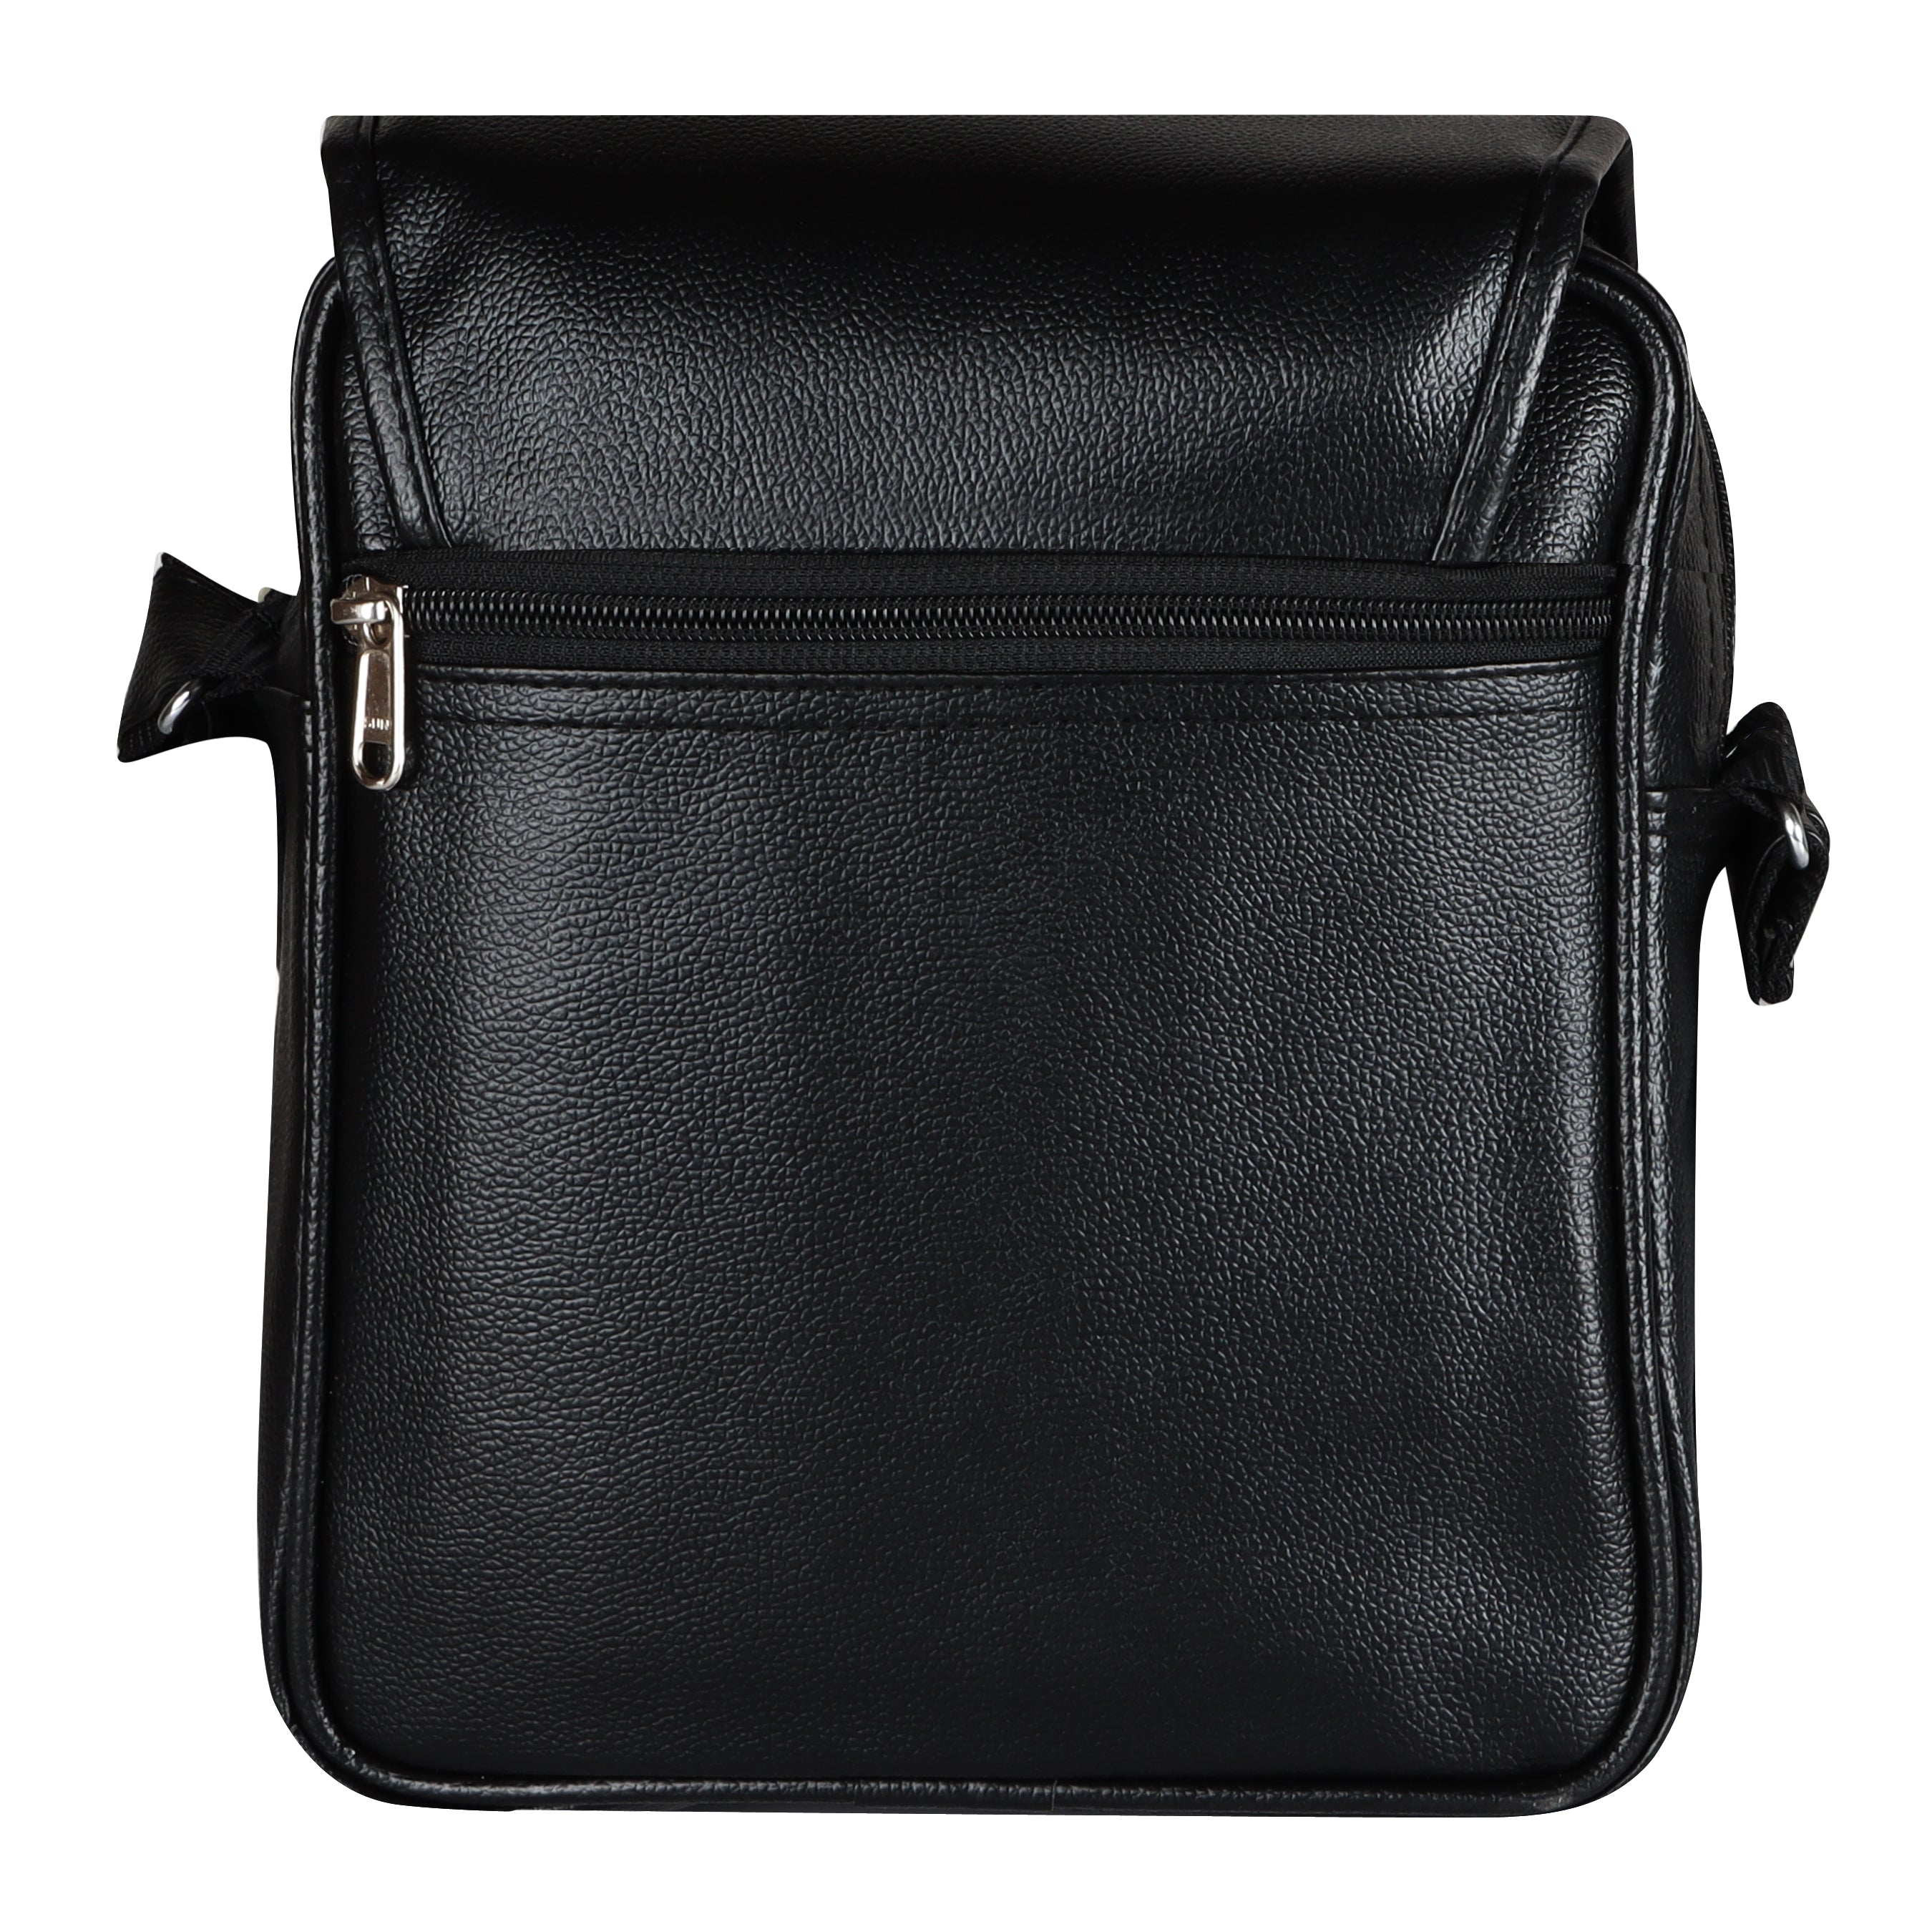 Jaxer Black Sling Bag for Men & Women - JXRSB102 - Jainx Store